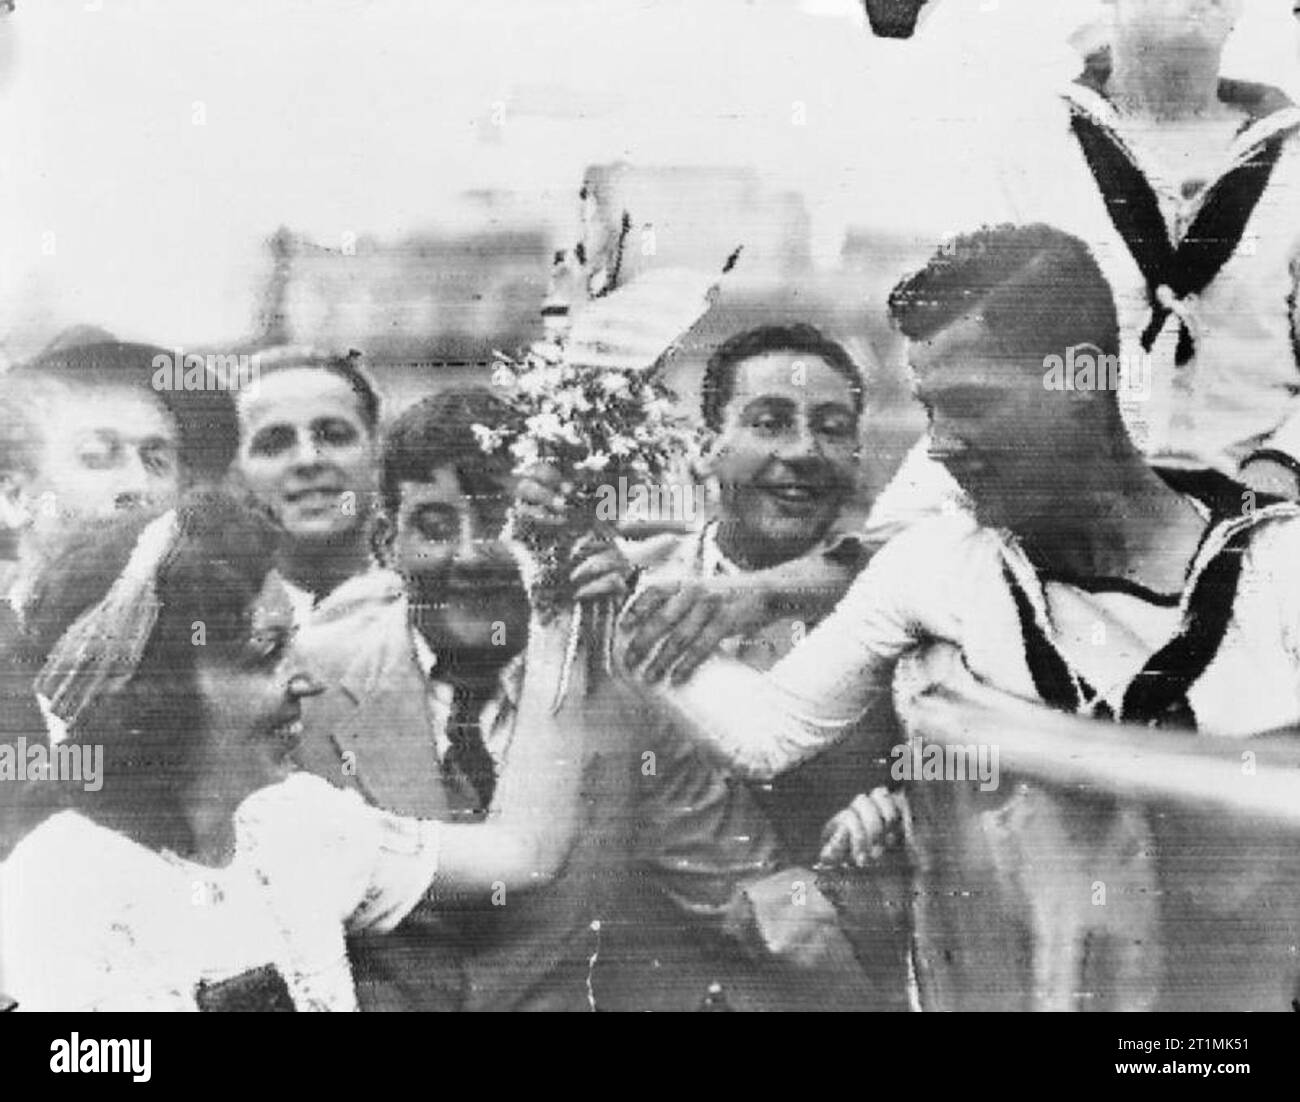 La Royal Navy durante la Segunda Guerra Mundial, los marineros, posiblemente del crucero HMS AJAX, paseo por las calles de Montevideo después de la batalla del río de La Plata y el echar a pique del Almirante Graf Spee. Aquí uno de ellos se presenta con un ramo de flores por una mujer. Foto de stock